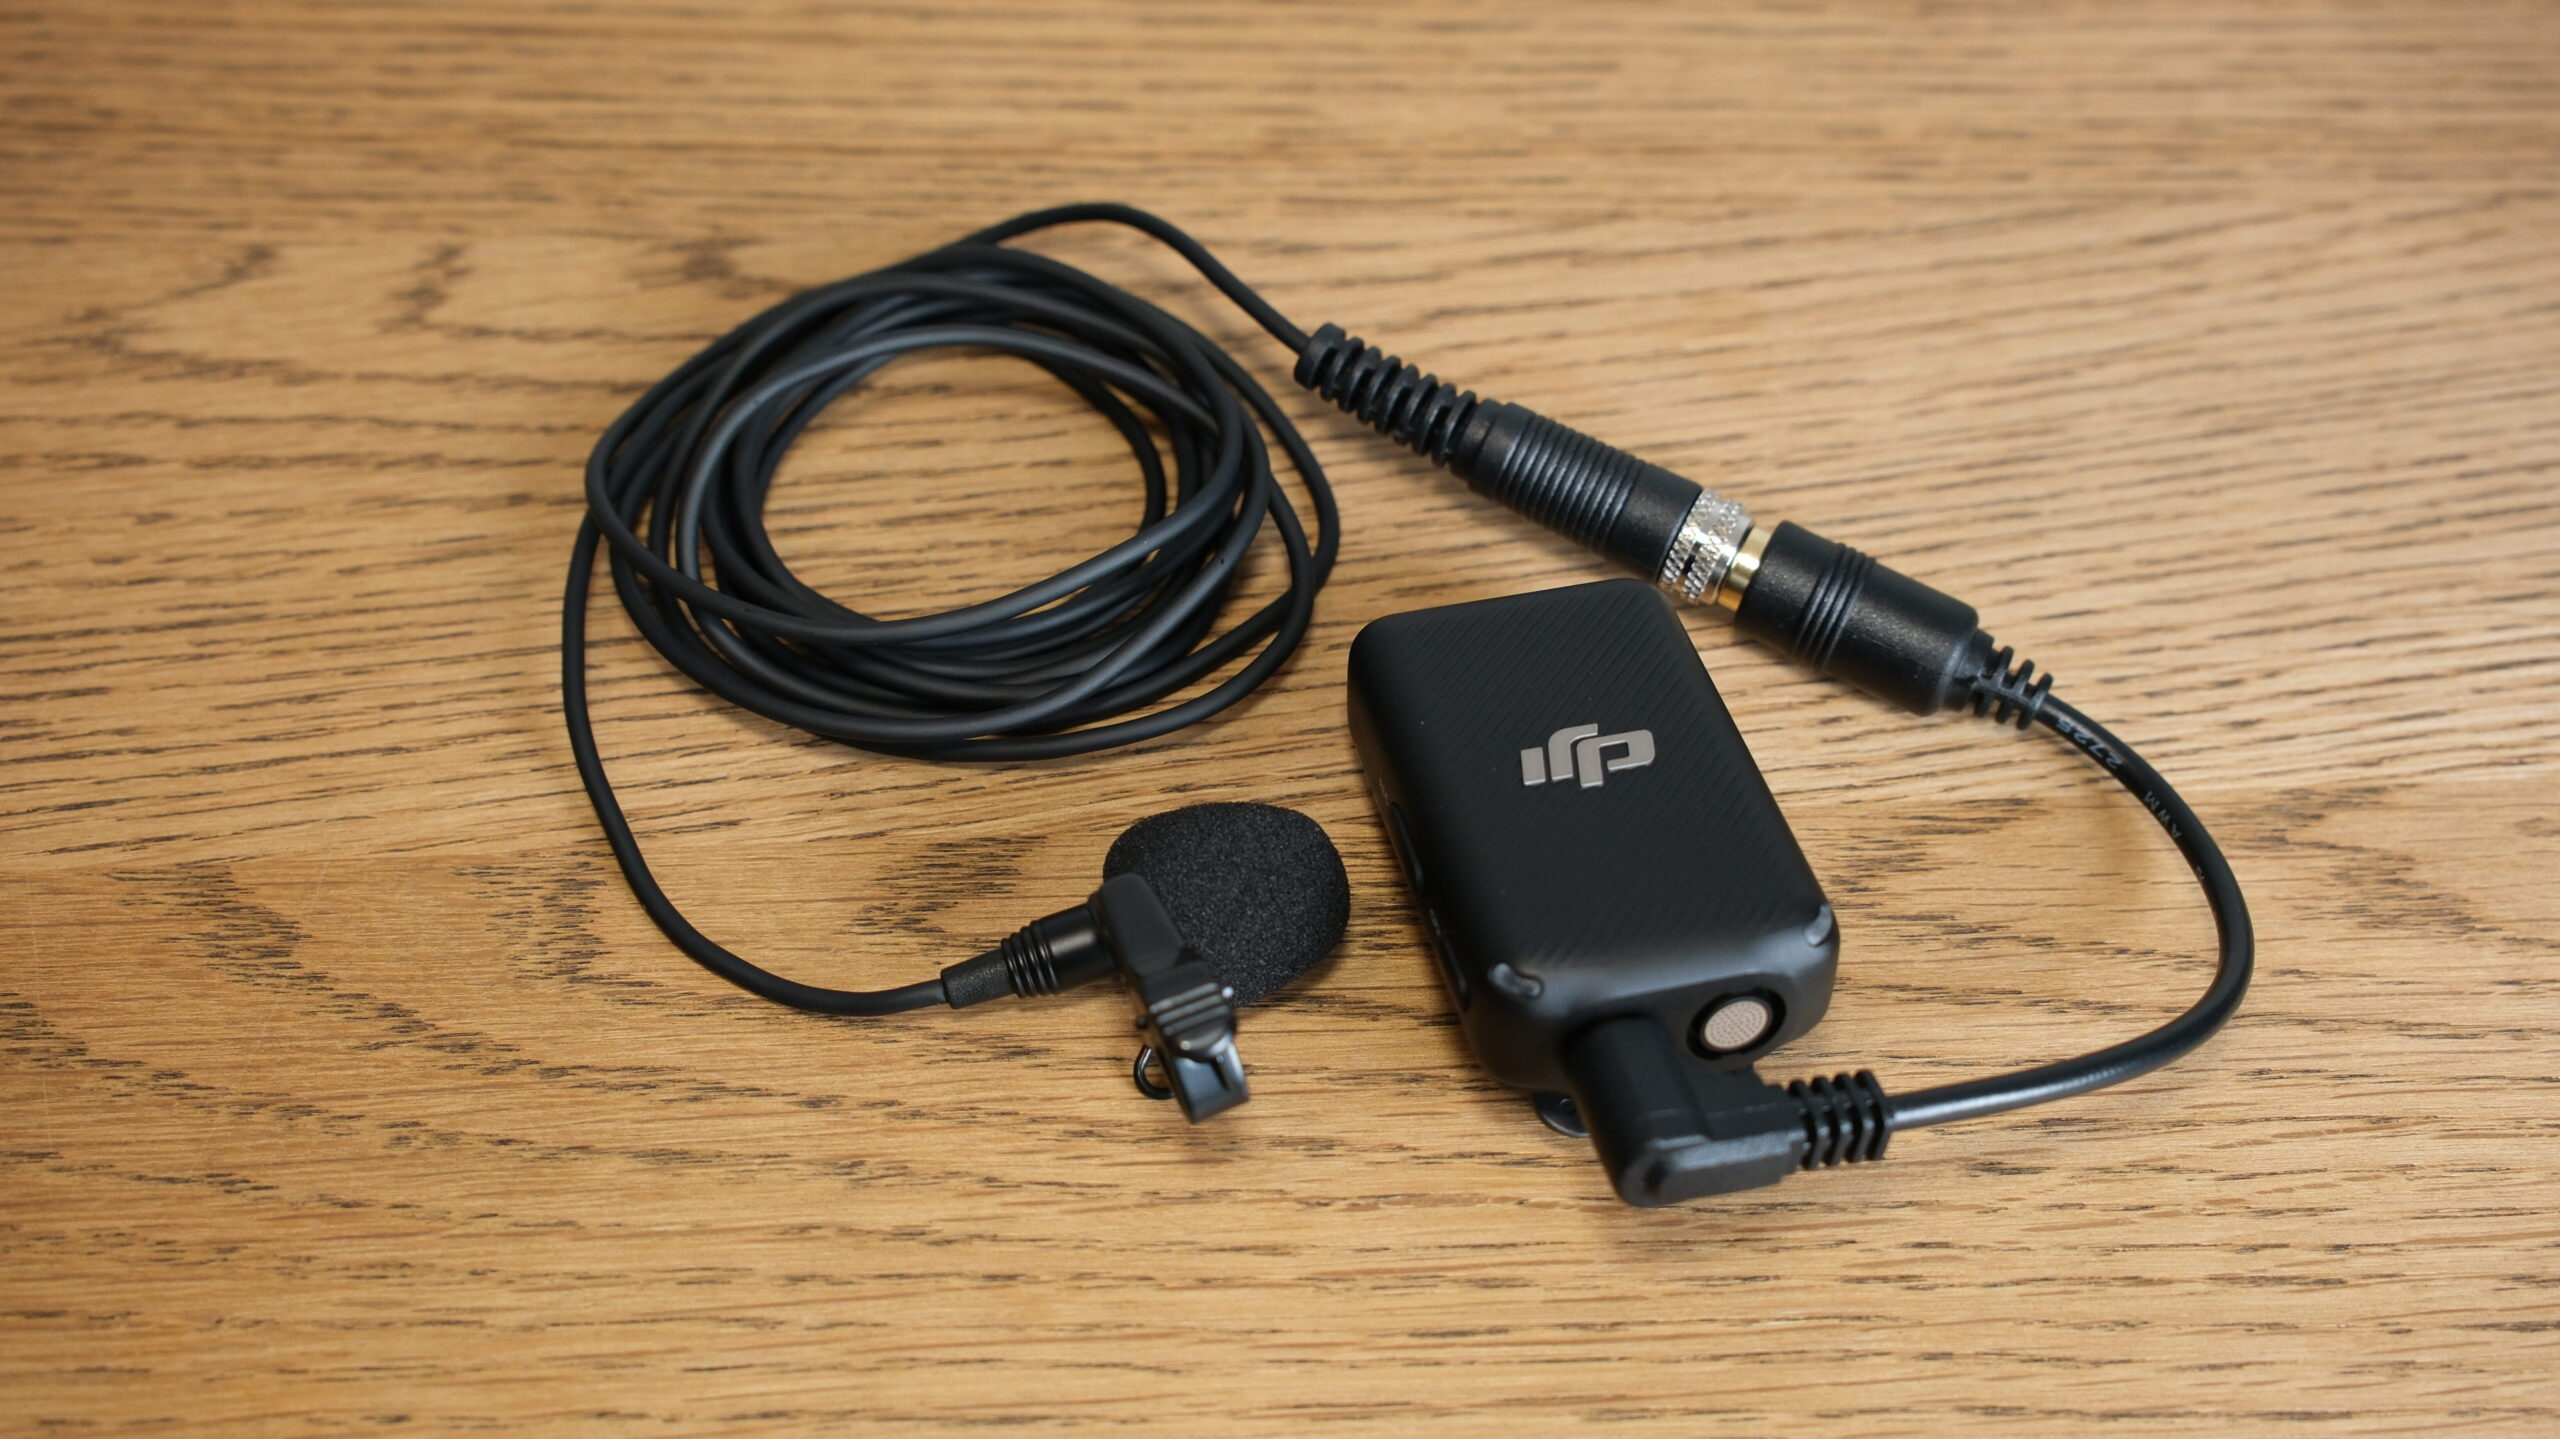 DJI-mic-cable-TM-10LB